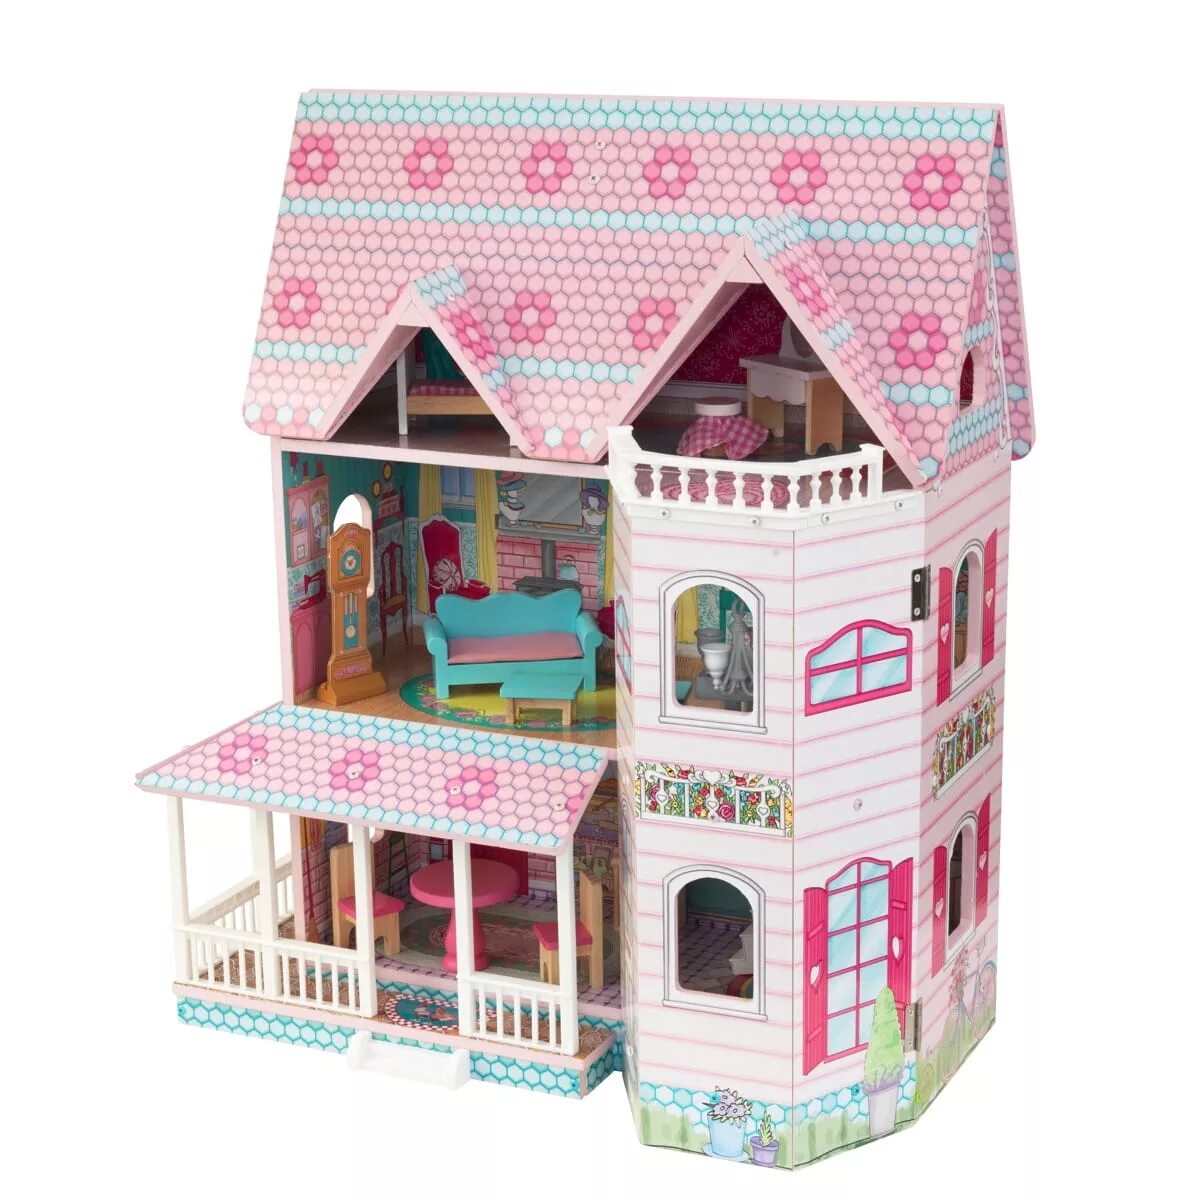 Кукольные игрушки купить. Кукольный домик Кидкрафт. Кукольный домик Эбби. Кукольный домик-система хранения Коняша принцесса дк015. Kidkraft домик для кукол.